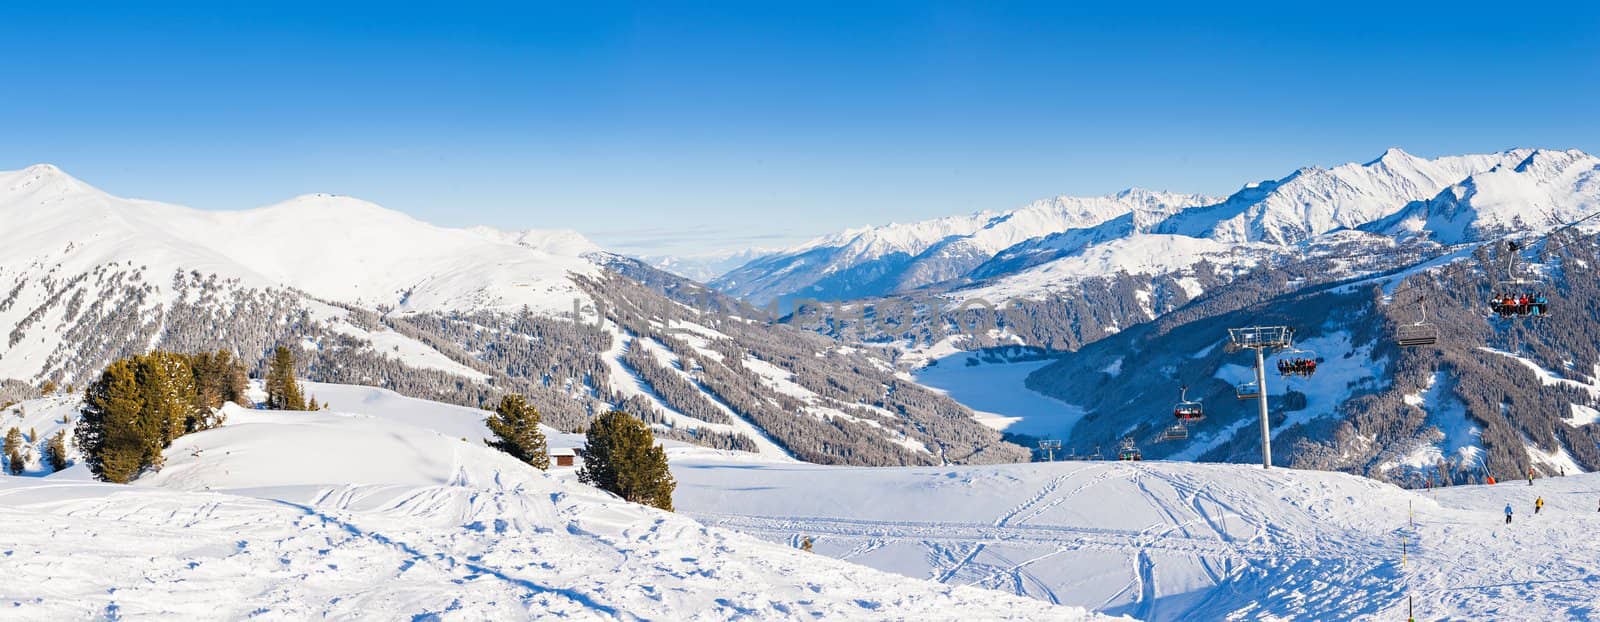 Winter landscape - Panorama of the ski resort Zell am Ziller, Tirol, Austria